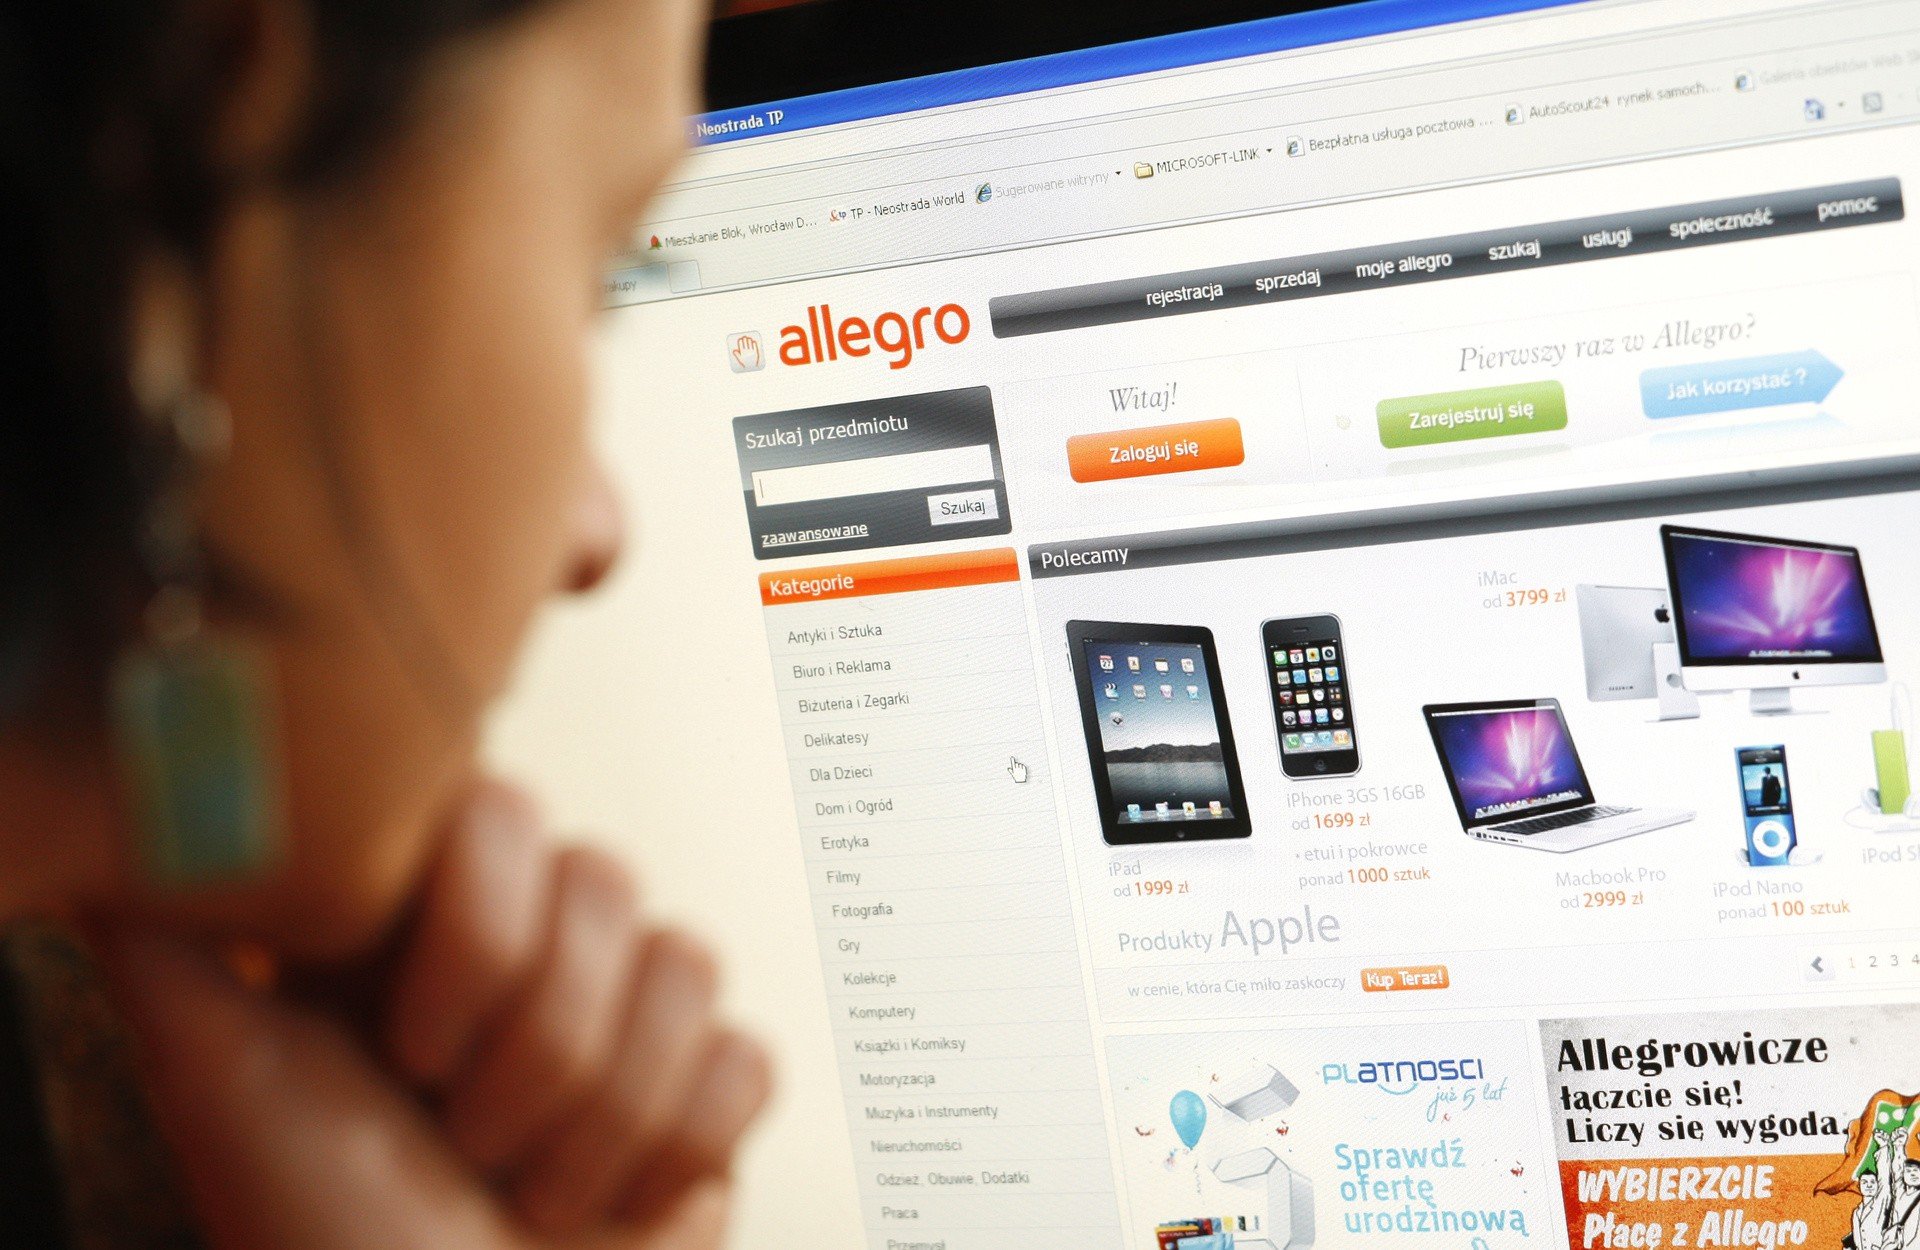 Allegro całkowicie zdominuje zakupy w sieci? Eksperci mają wątpliwości |  Strefa Biznesu